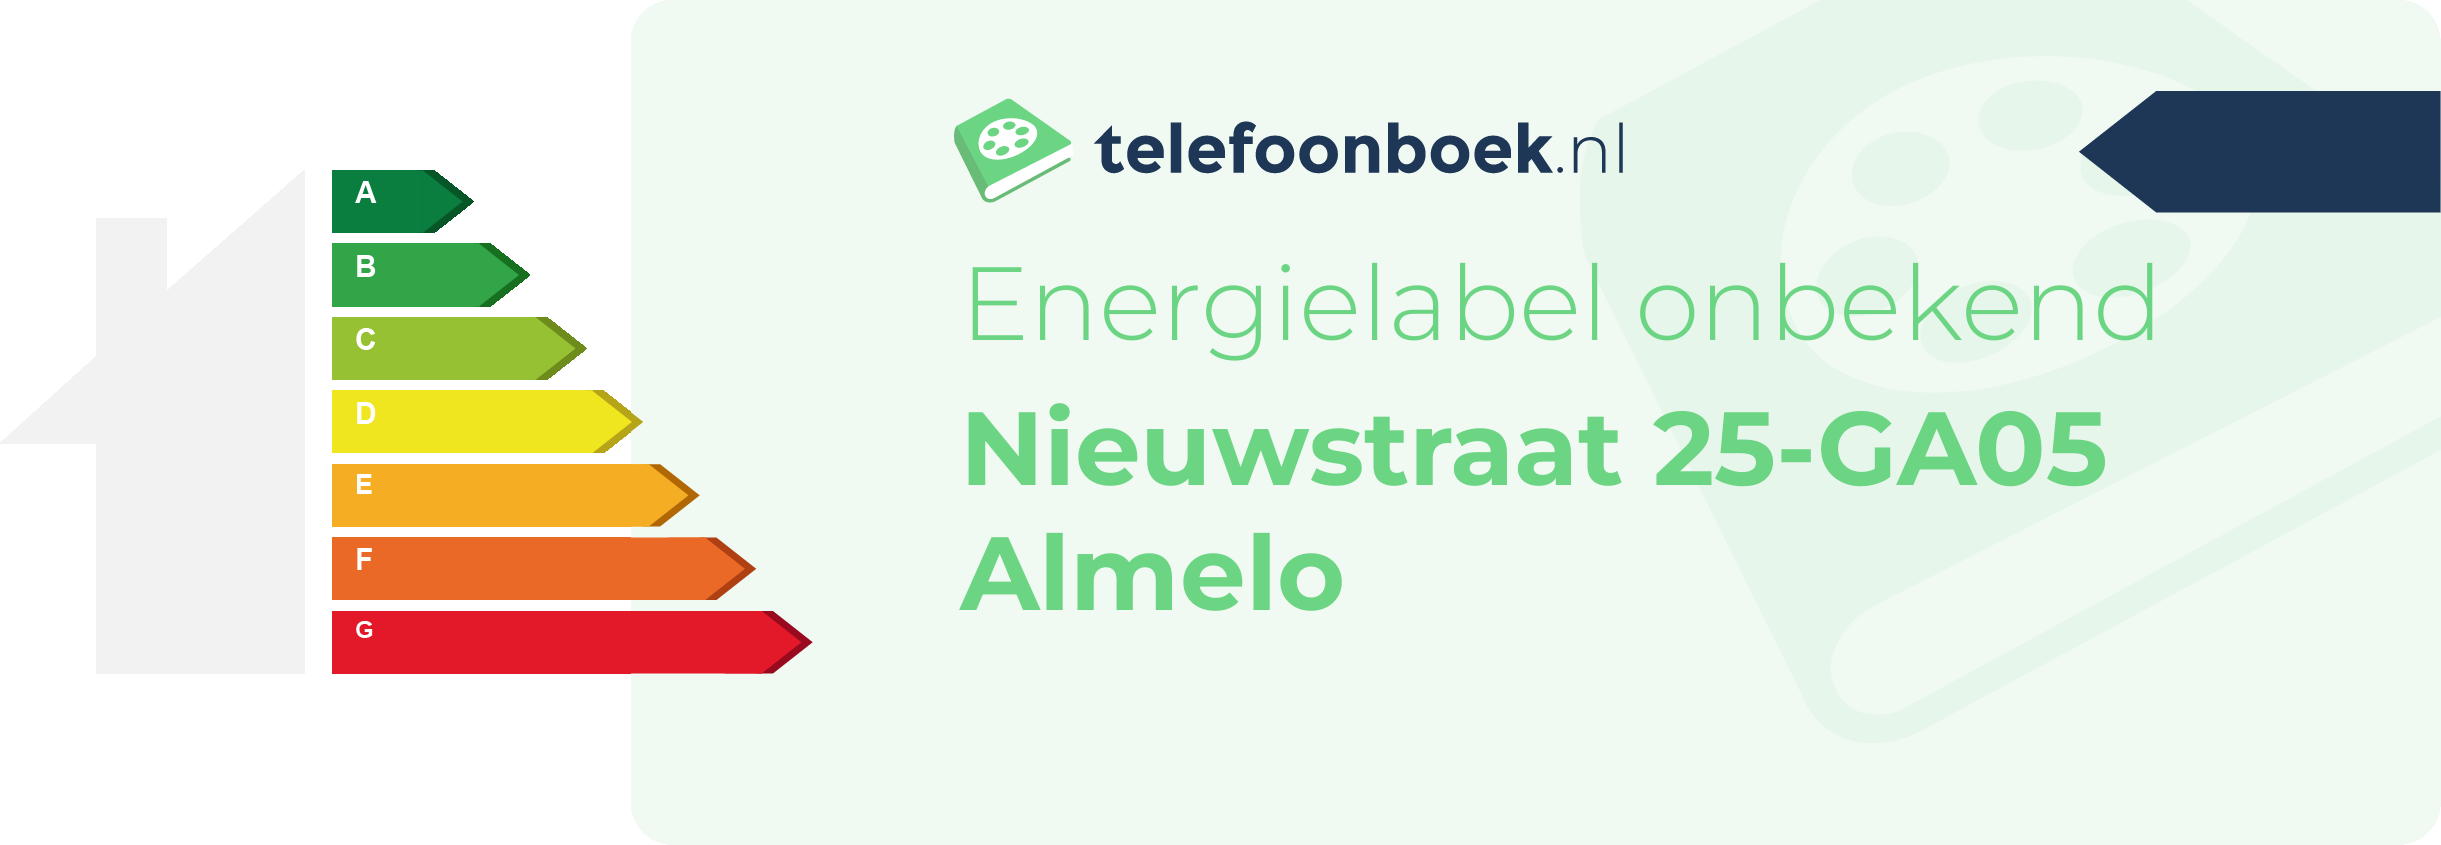 Energielabel Nieuwstraat 25-GA05 Almelo